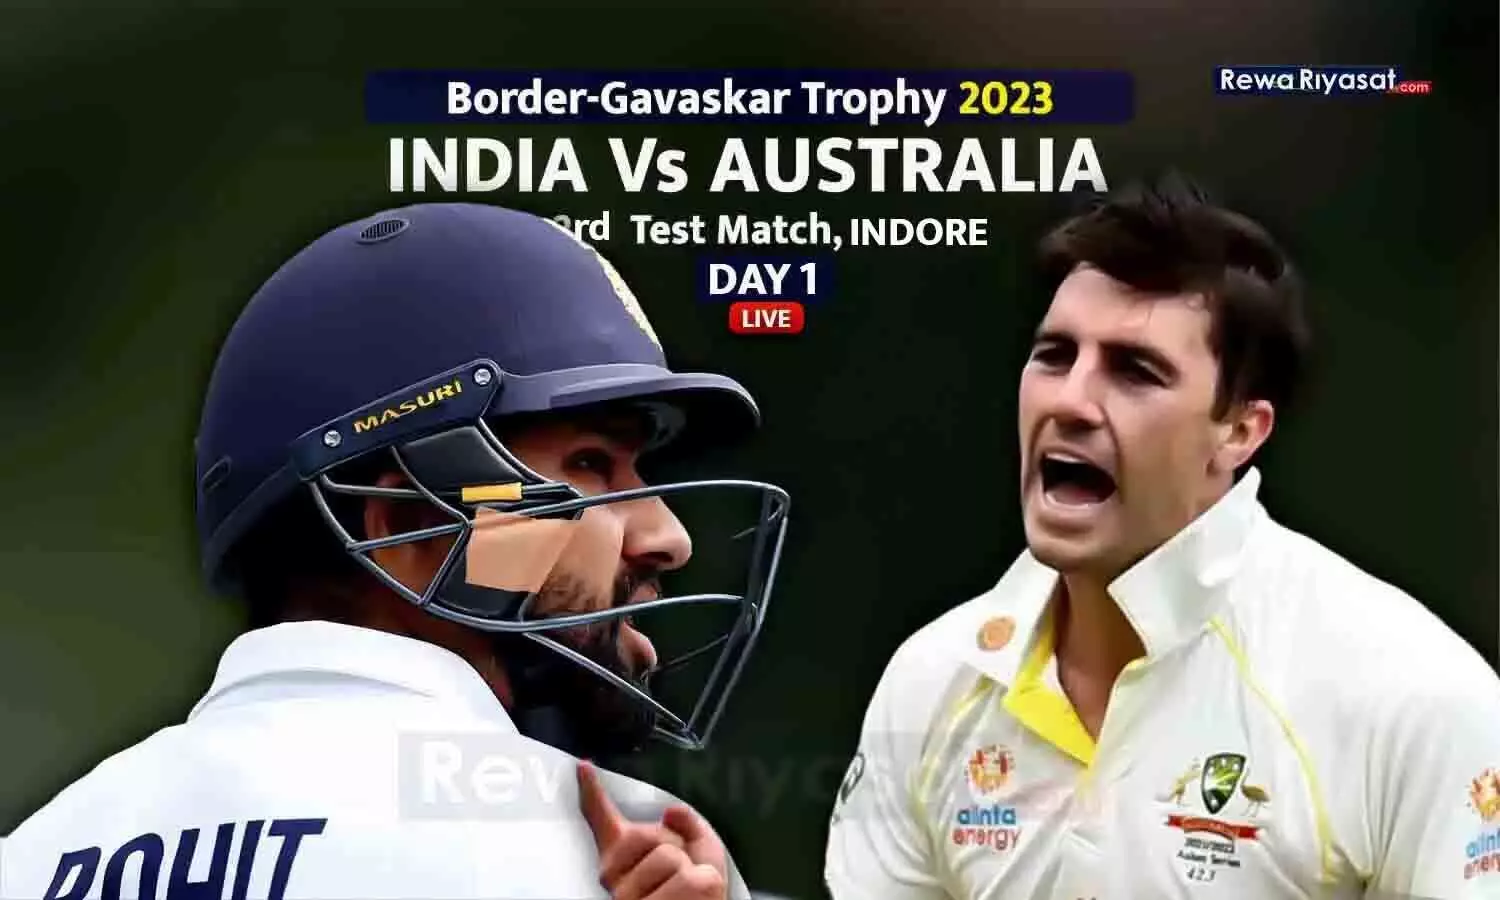 IND Vs AUS 3rd Test Day 1 LIVE: भारत को 7वां झटका, भरत 17 बनाकर आउट; इंडिया - 82/7